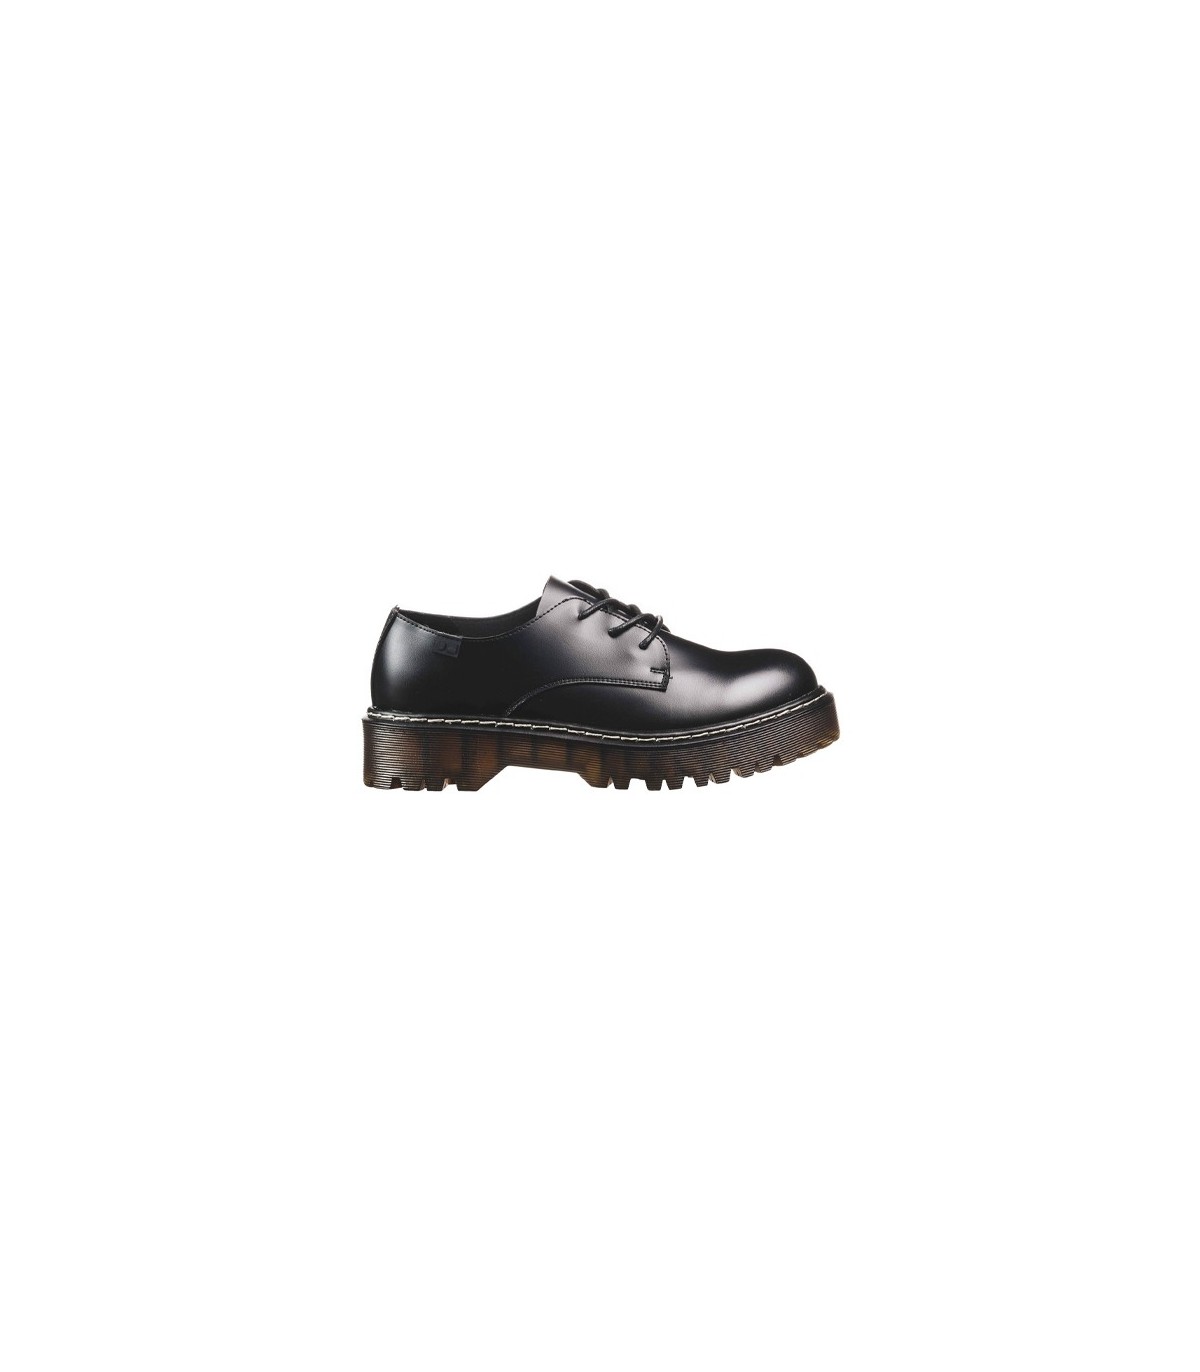 Coolway Calia Zapatos de Cordones Oxford para Mujer 